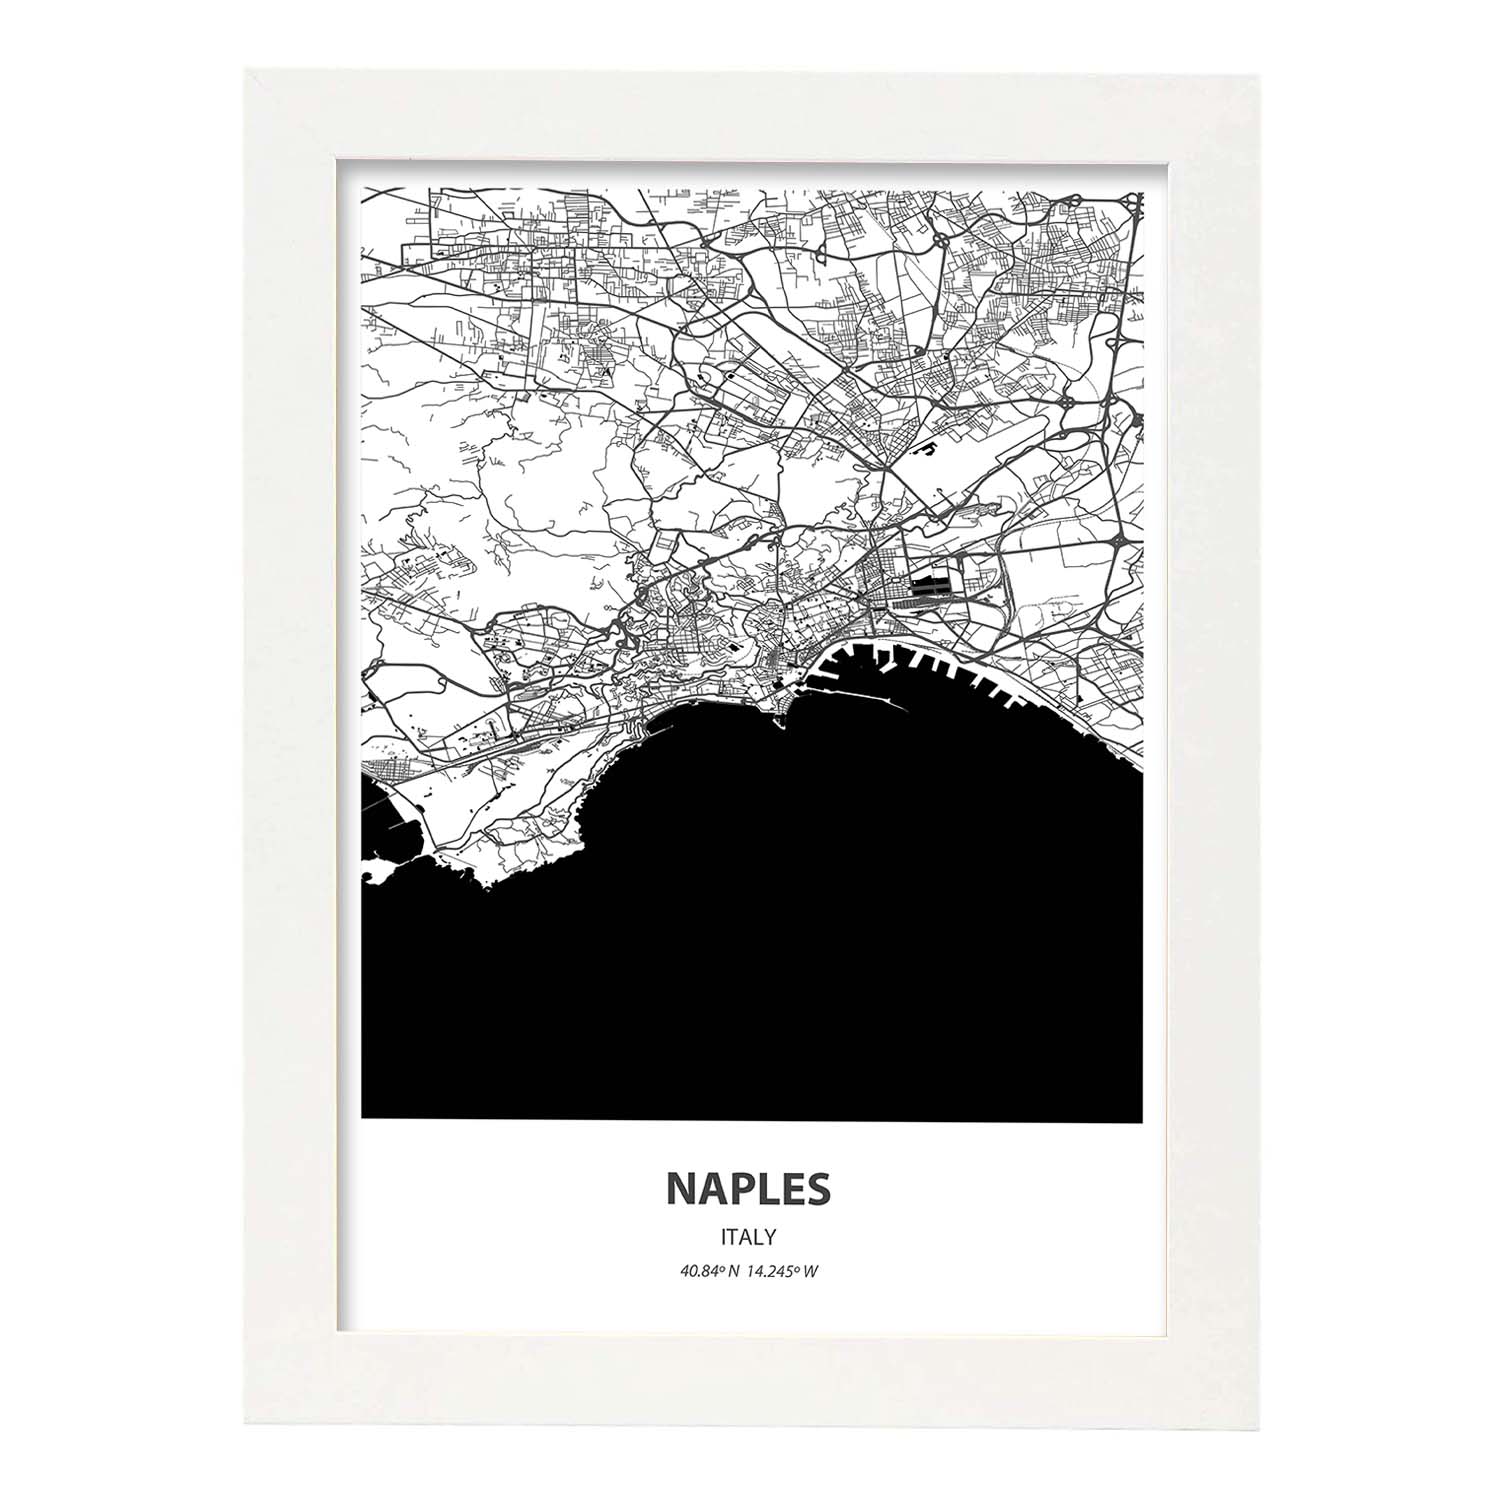 Poster con mapa de Naples - Italia. Láminas de ciudades de Italia con mares y ríos en color negro.-Artwork-Nacnic-A4-Marco Blanco-Nacnic Estudio SL